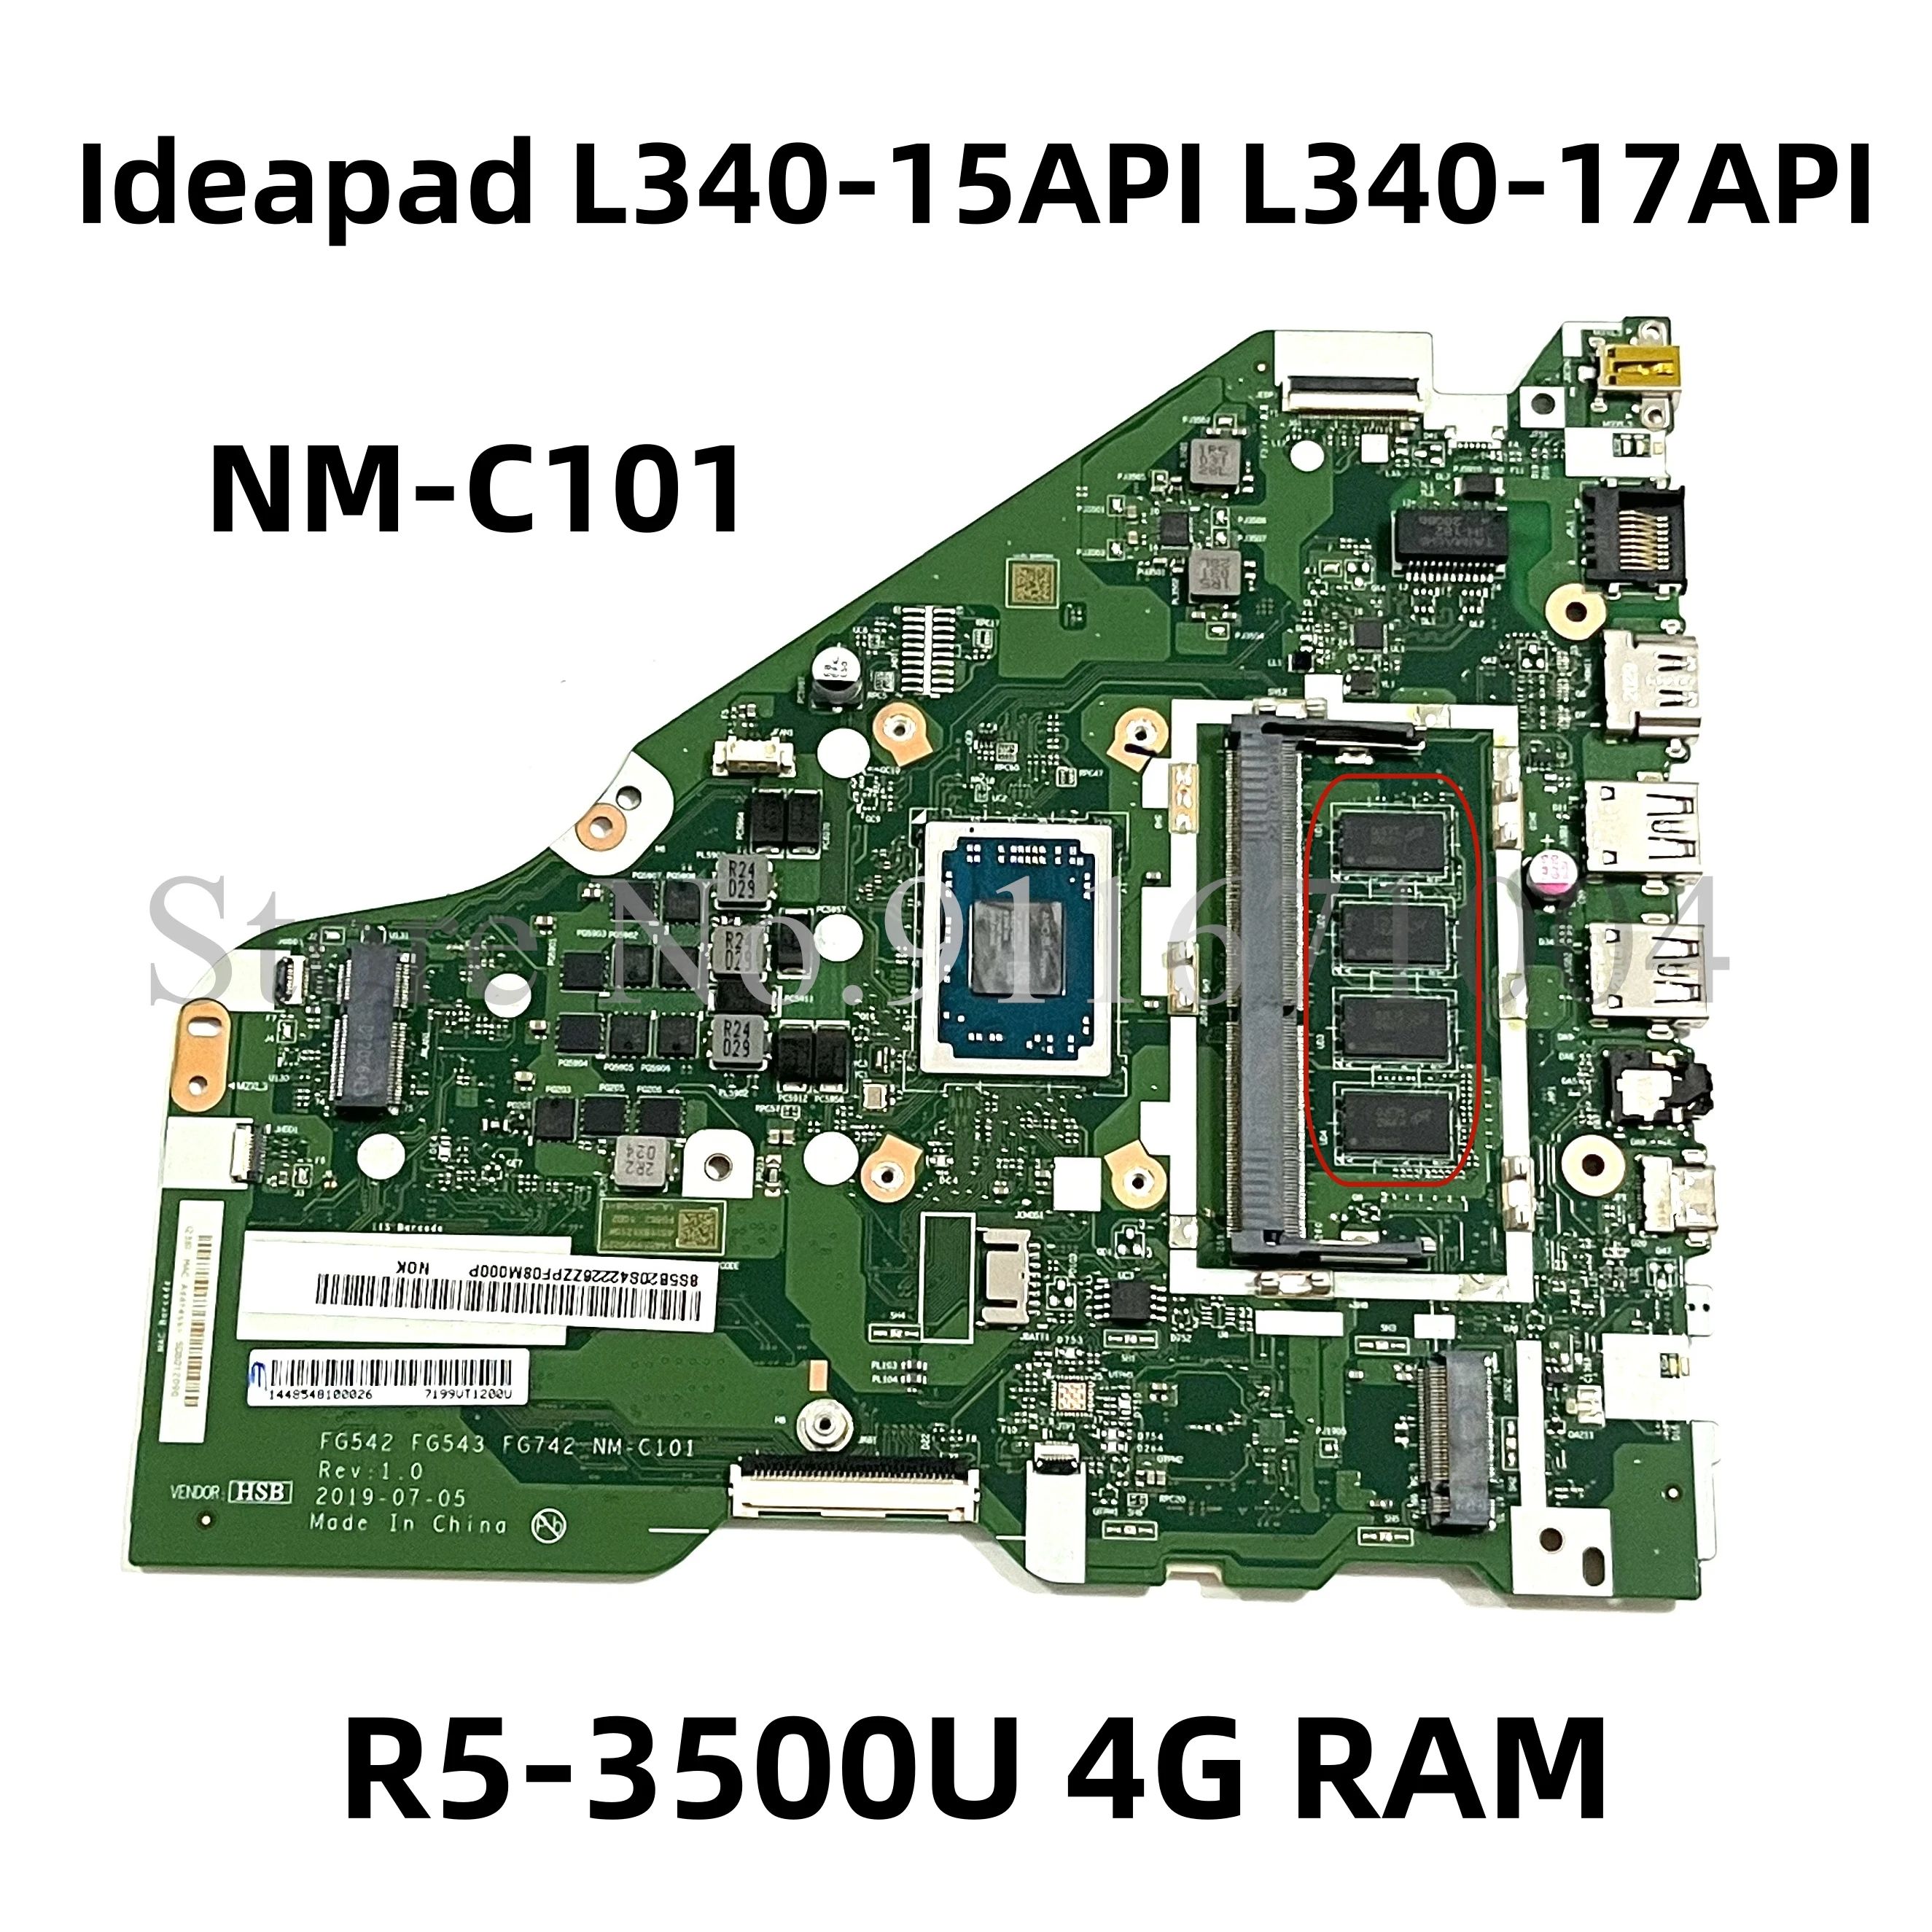 Yapılandırma: R5-3500U 4G RAM